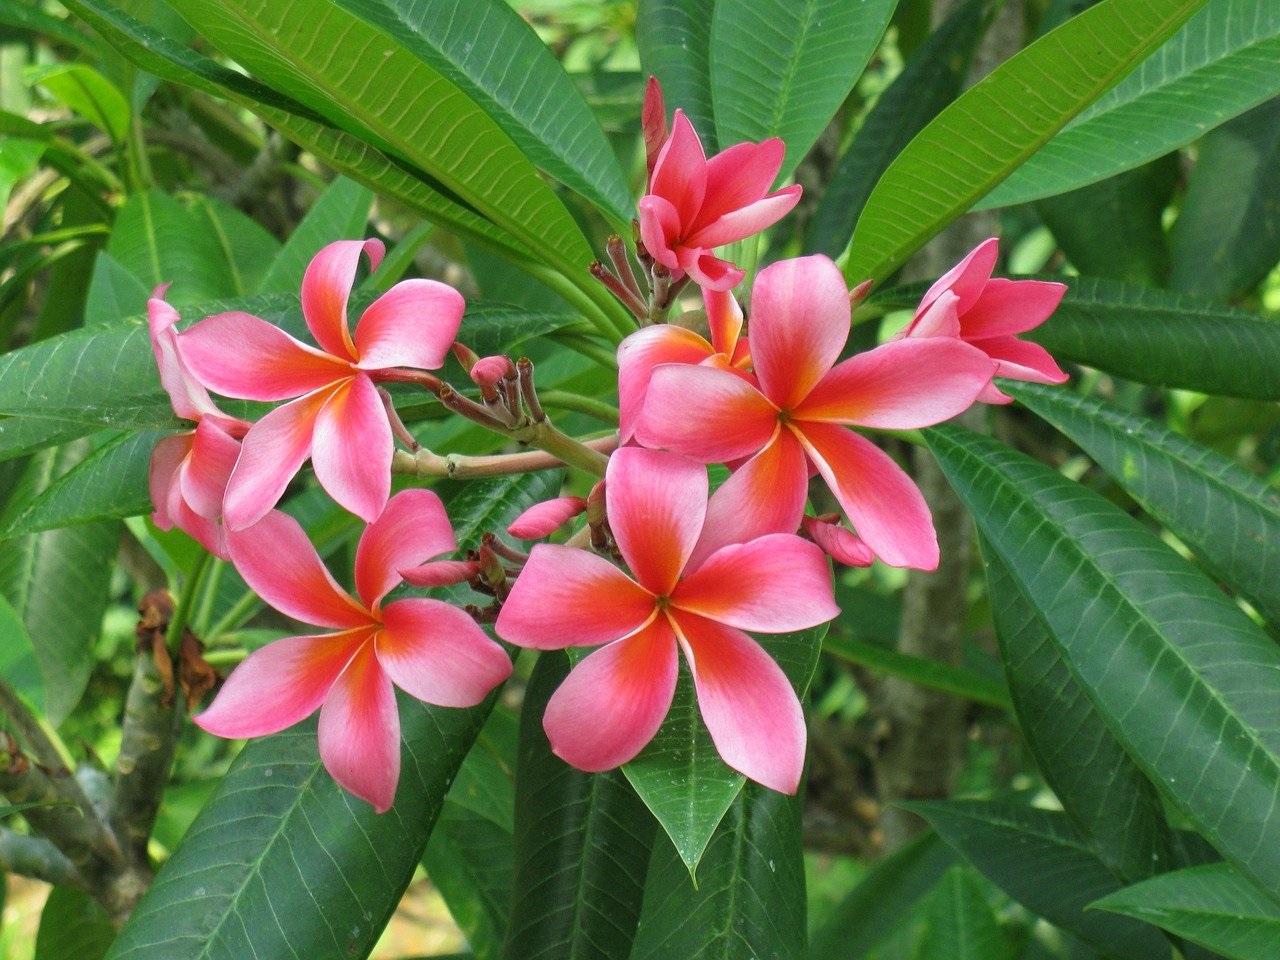   20 Gambar Bunga Kamboja  Cantik Servergambar01